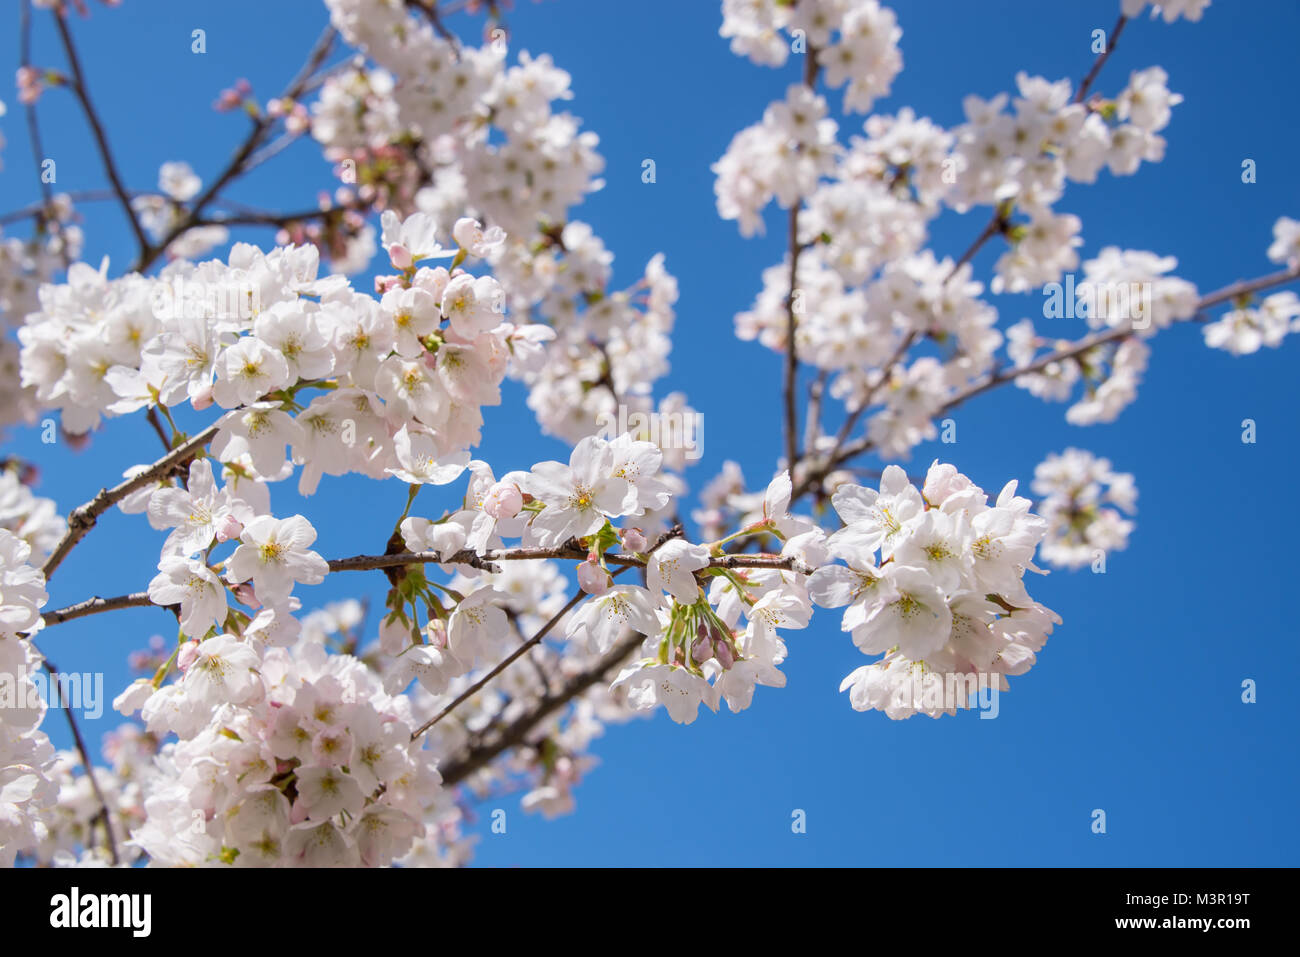 Cherry blossom, blue sky background, springtime concept Stock Photo